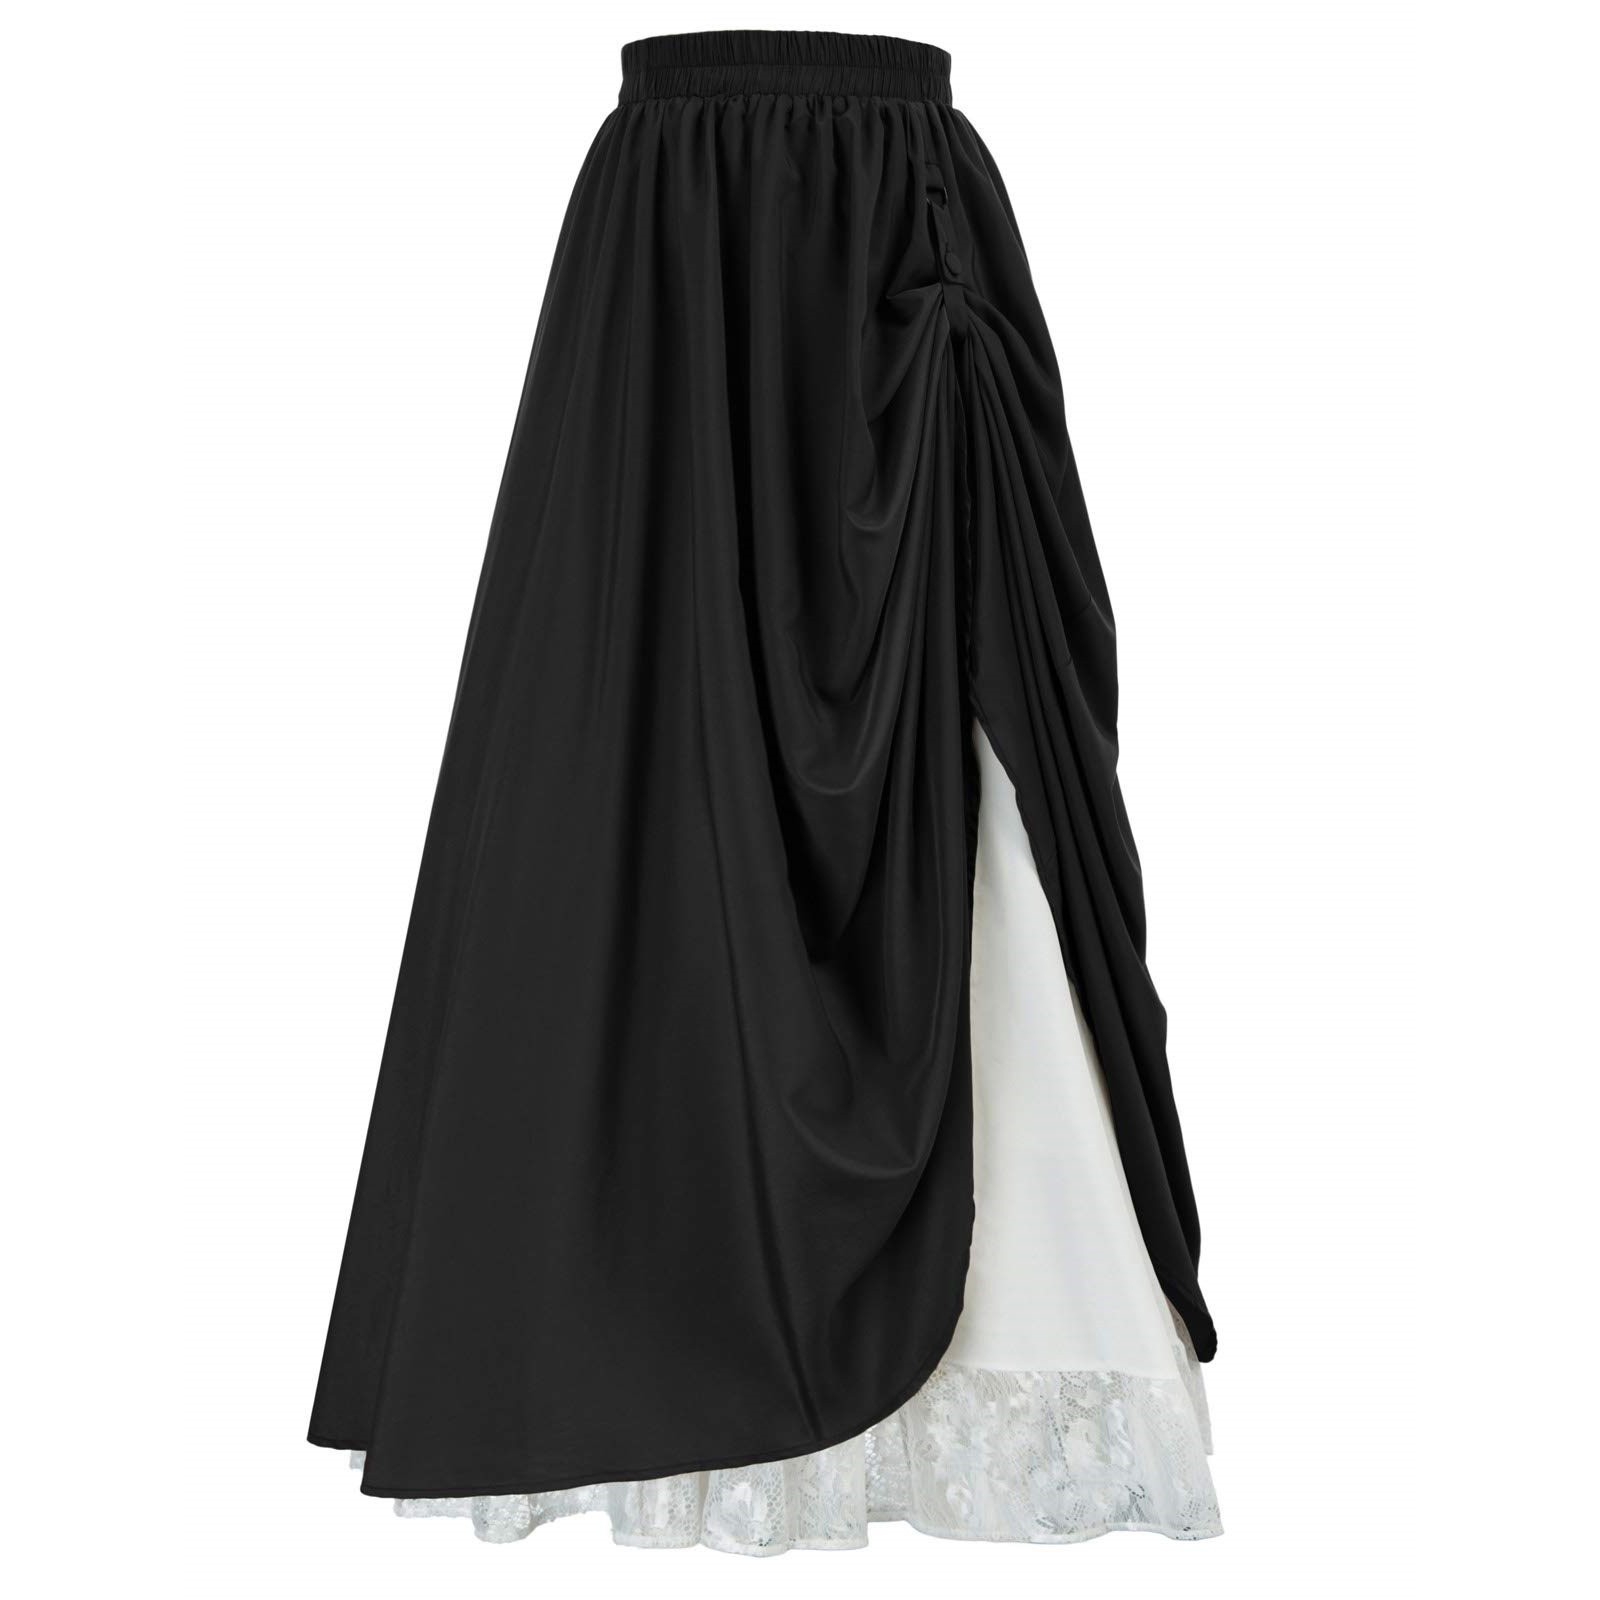 Lace Half Skirt Draped Pleated Vintage Skirt